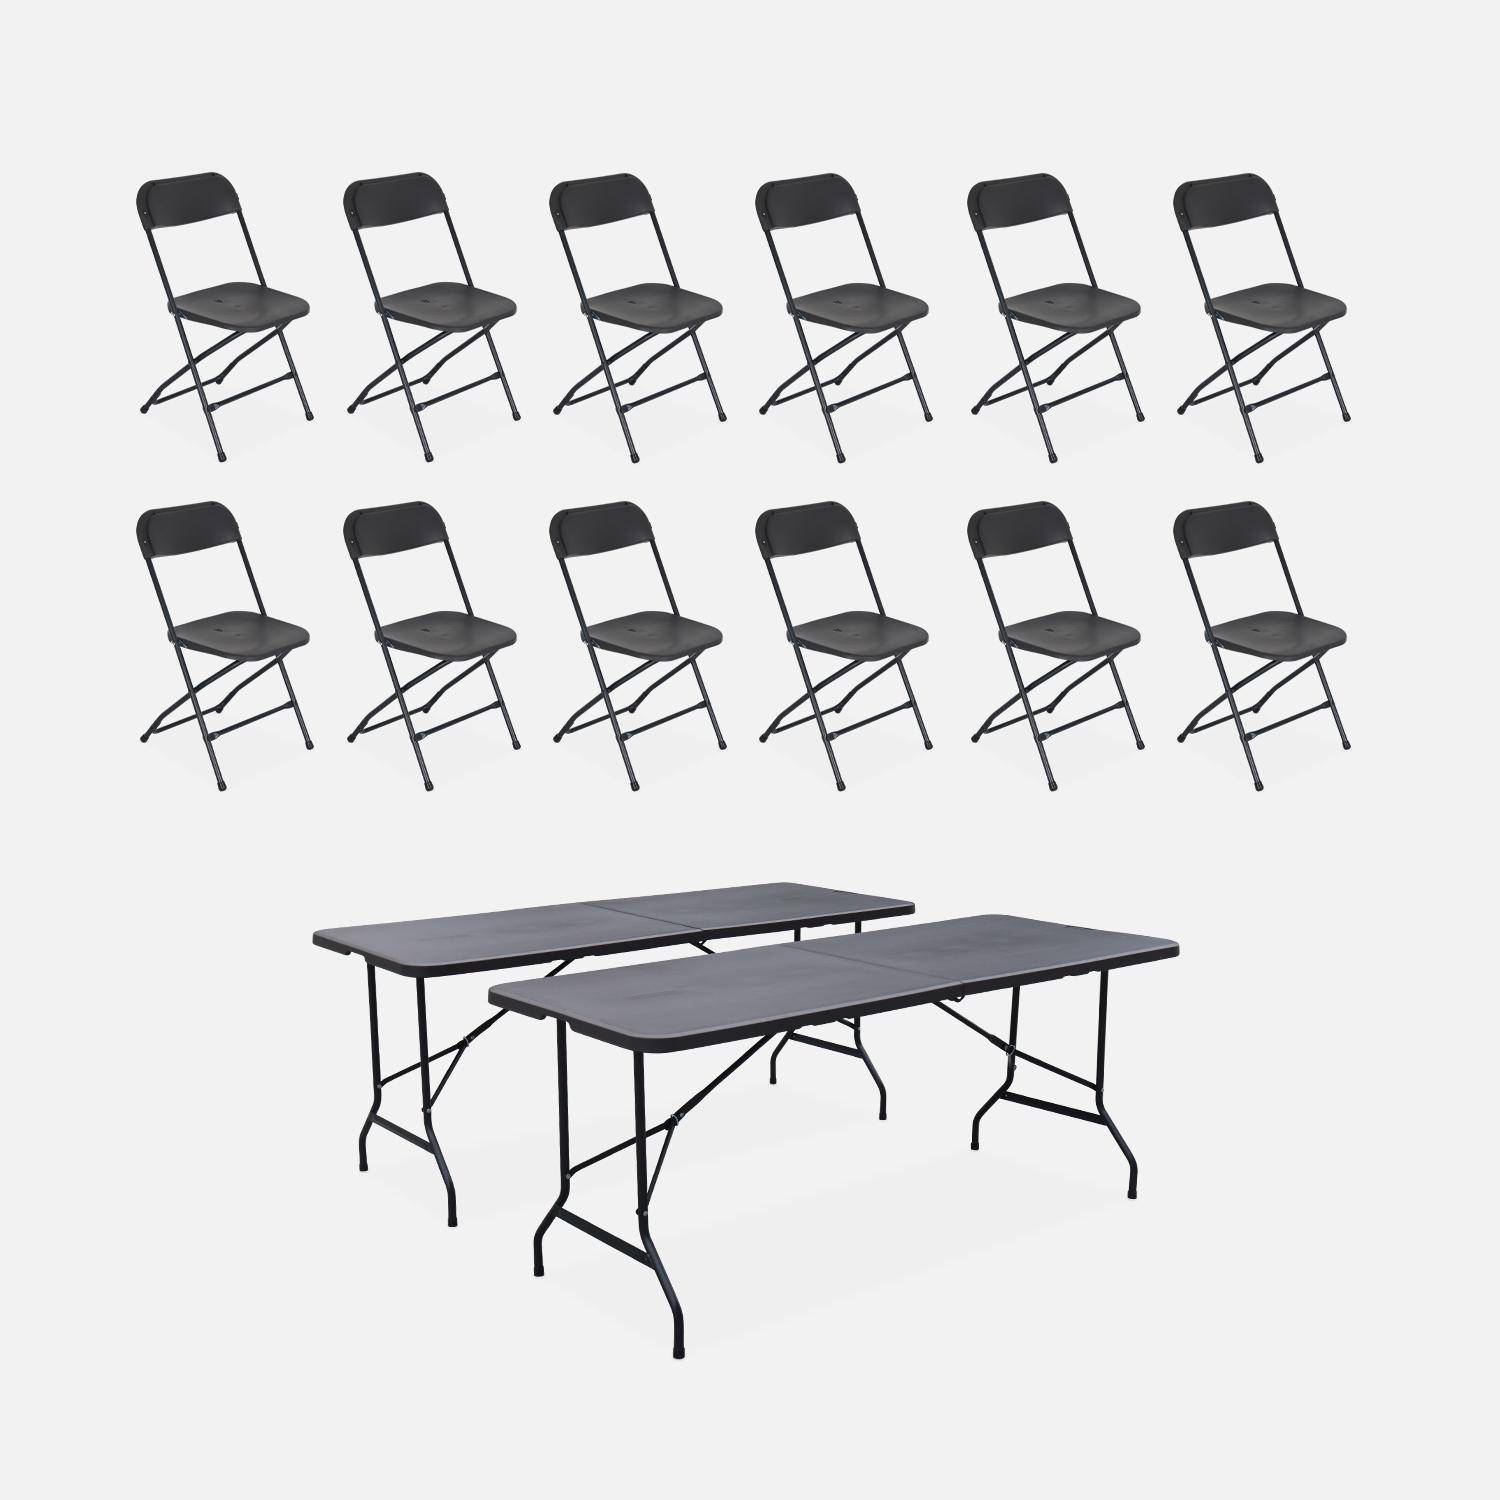 Lote de 2 mesas de recepción plegables de plástico + 12 sillas, Fiesta, Gris oscuro Photo1